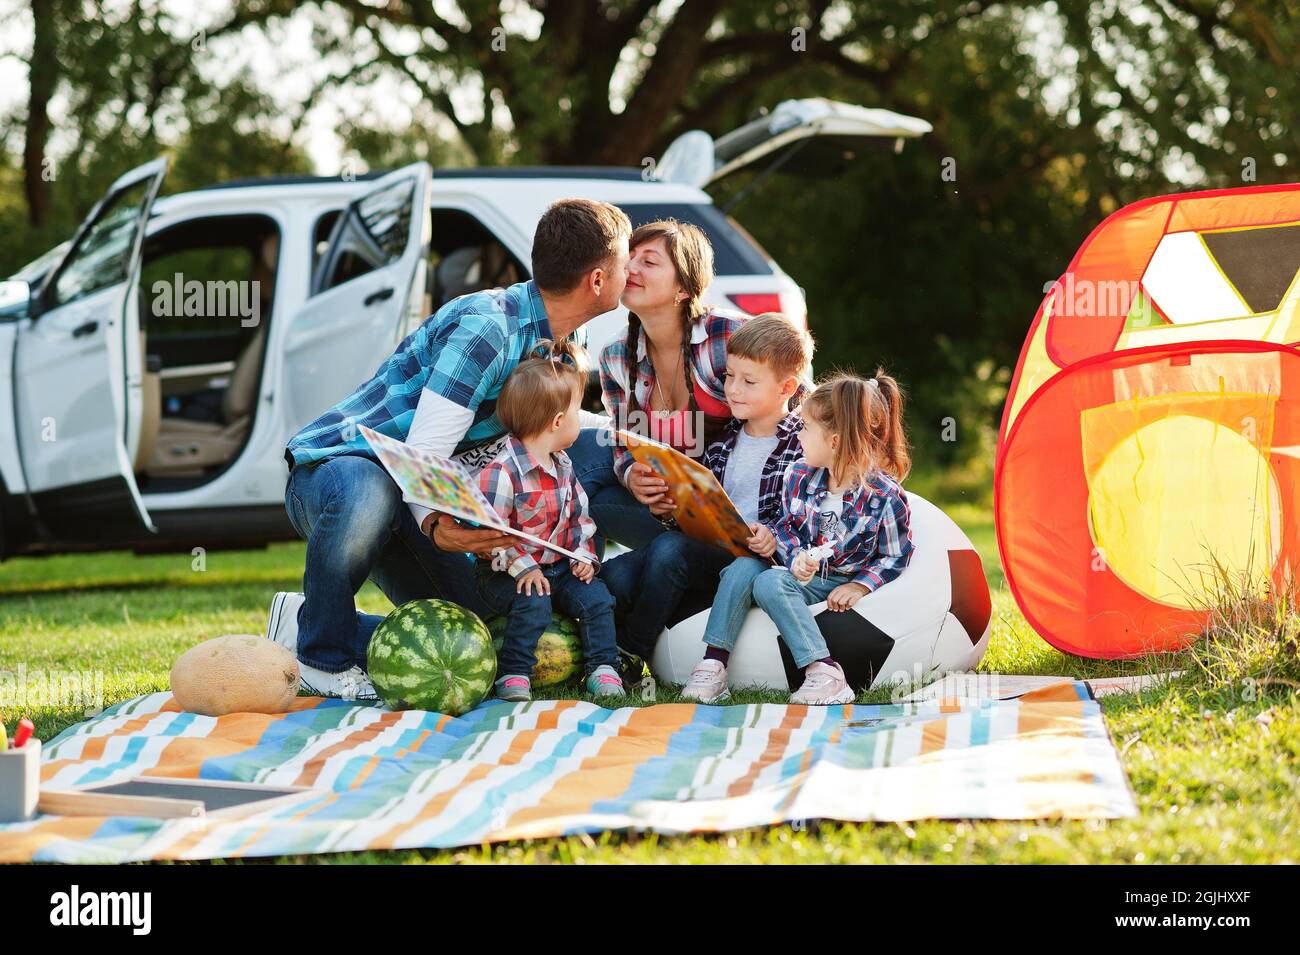 Familie verbringt Zeit zusammen. Drei Kinder. Picknickdecke im Freien.  Vater küsst Mutter Stockfotografie - Alamy